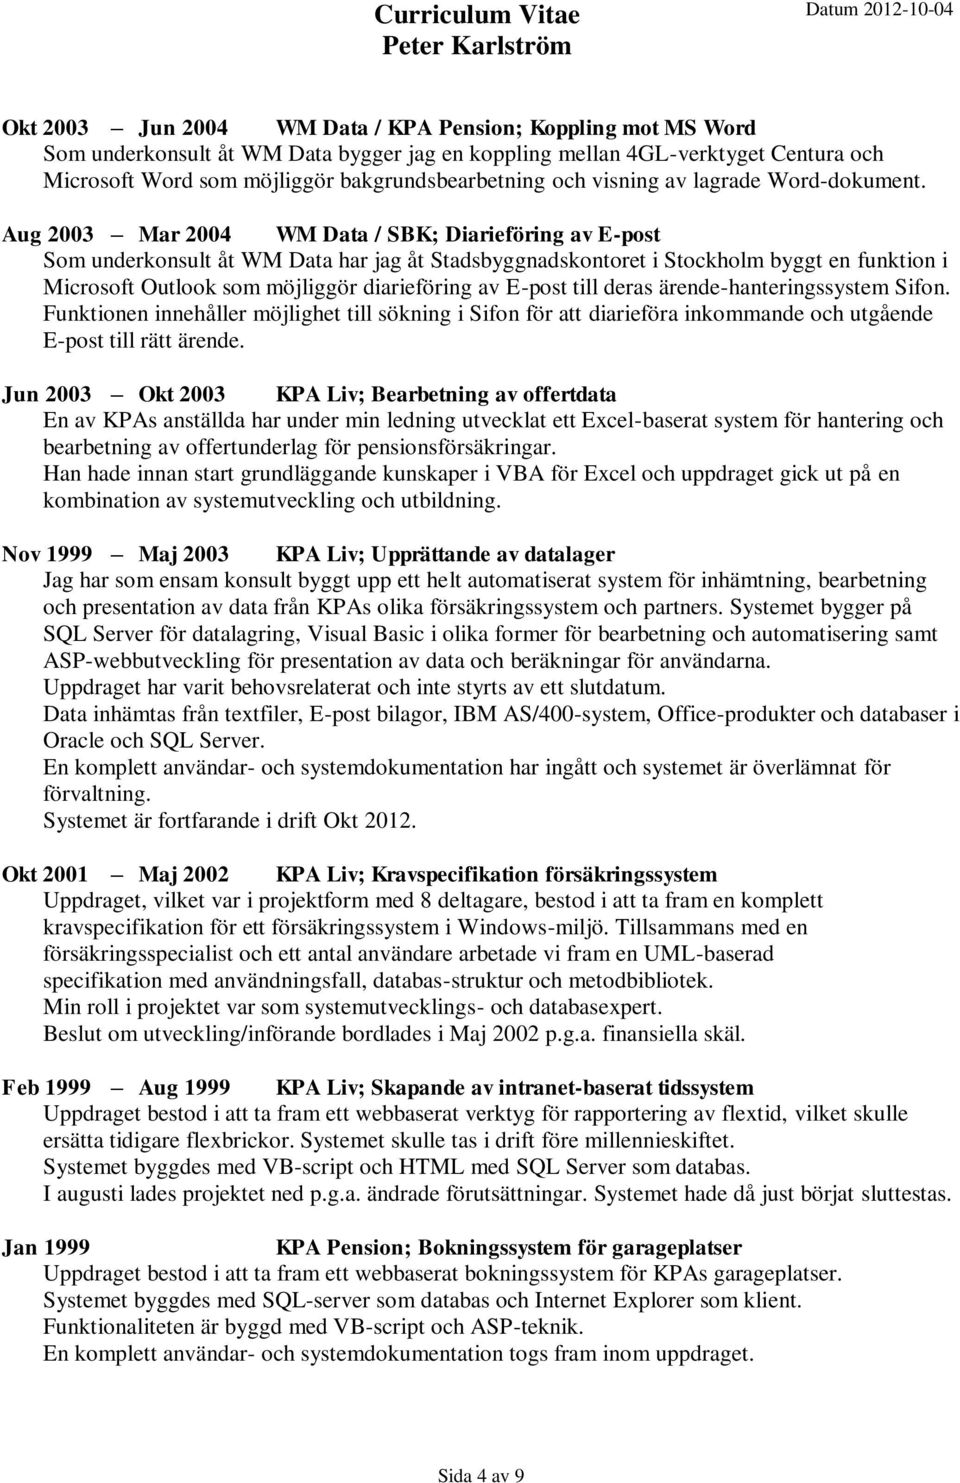 Aug 2003 Mar 2004 WM Data / SBK; Diarieföring av E-post Som underkonsult åt WM Data har jag åt Stadsbyggnadskontoret i Stockholm byggt en funktion i Microsoft Outlook som möjliggör diarieföring av